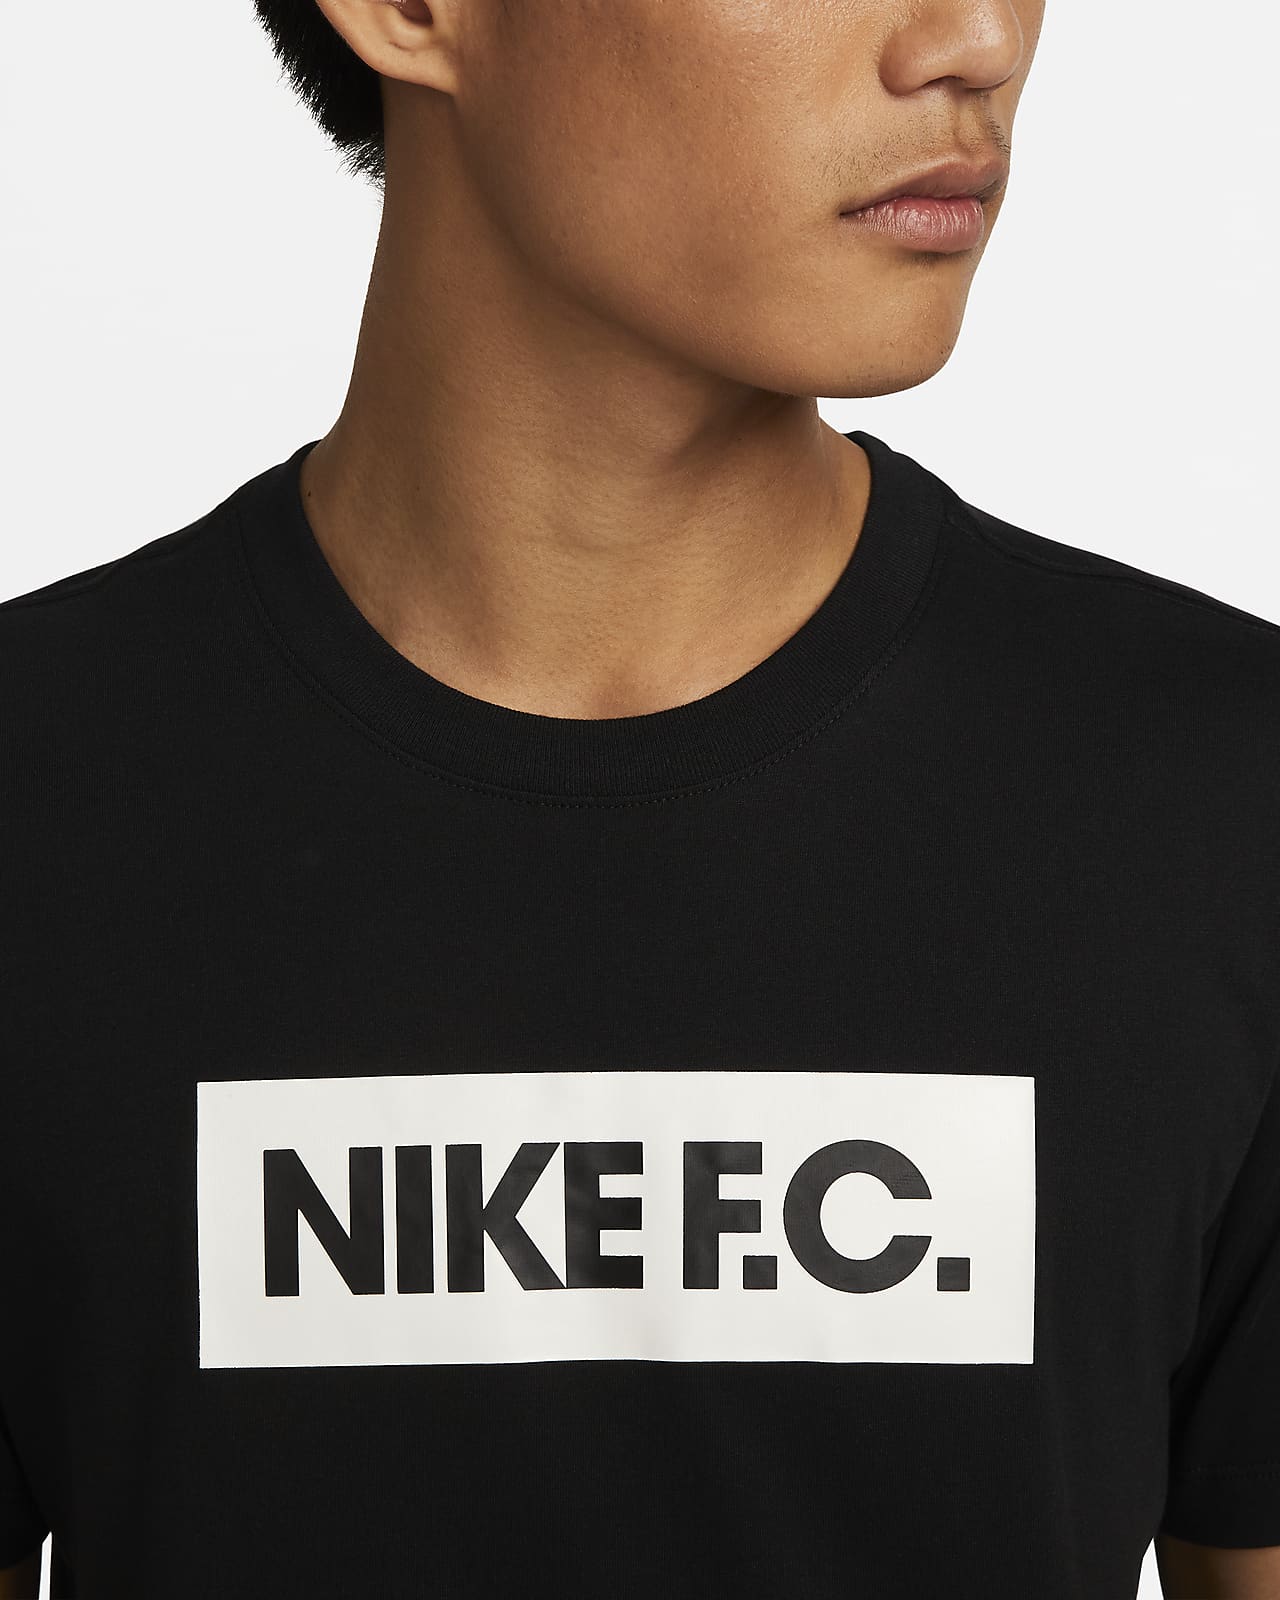 Nike公式 ナイキ F C メンズ サッカー Tシャツ オンラインストア 通販サイト